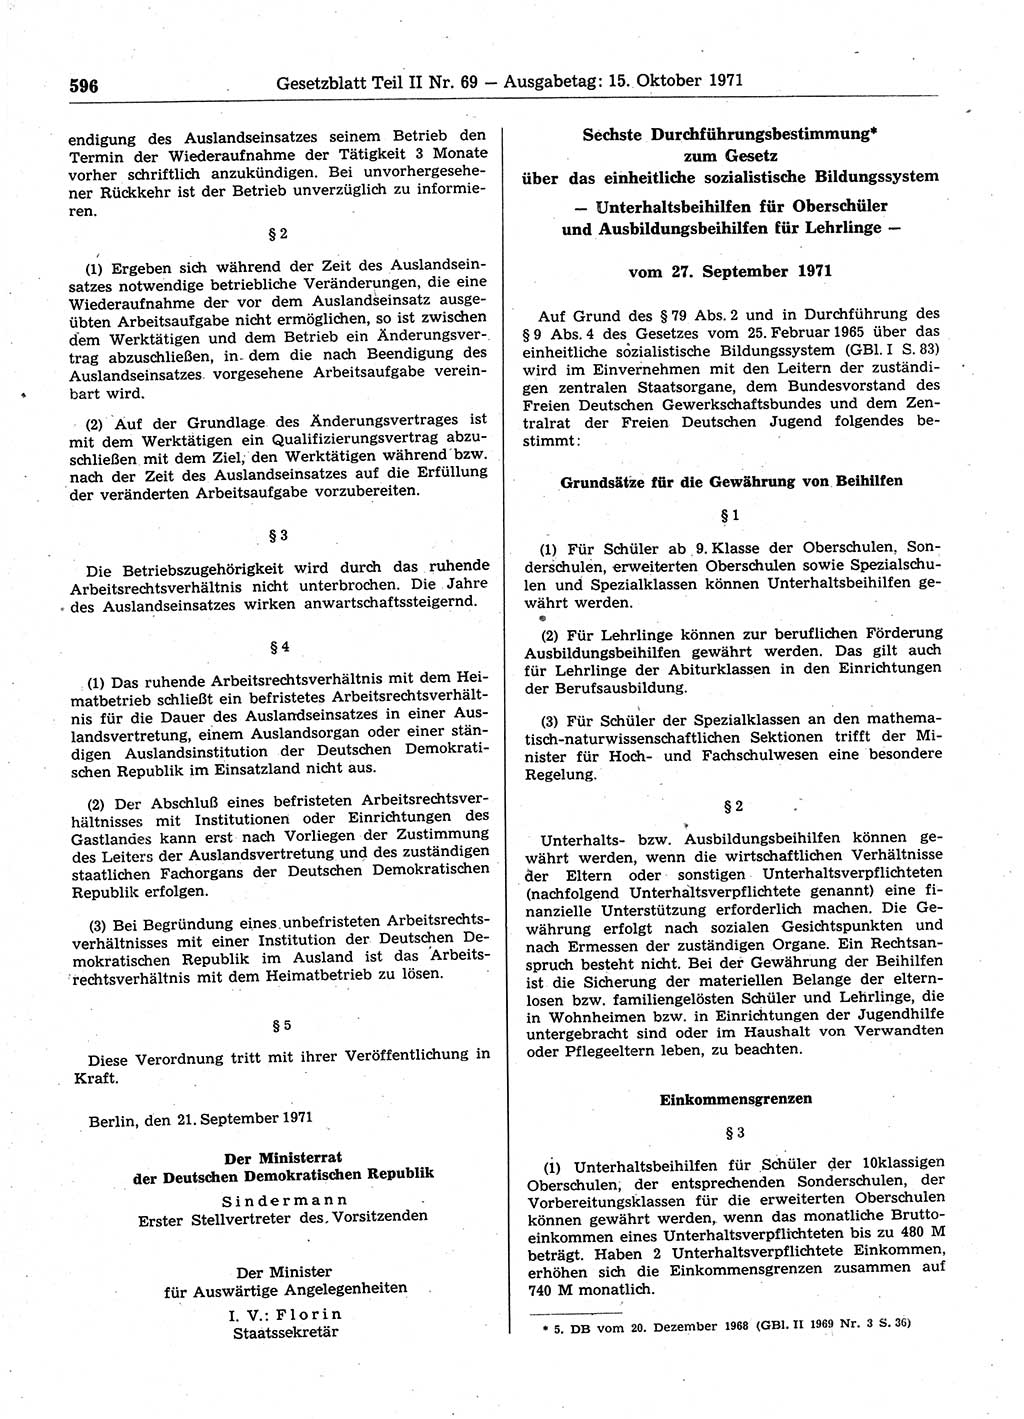 Gesetzblatt (GBl.) der Deutschen Demokratischen Republik (DDR) Teil ⅠⅠ 1971, Seite 596 (GBl. DDR ⅠⅠ 1971, S. 596)